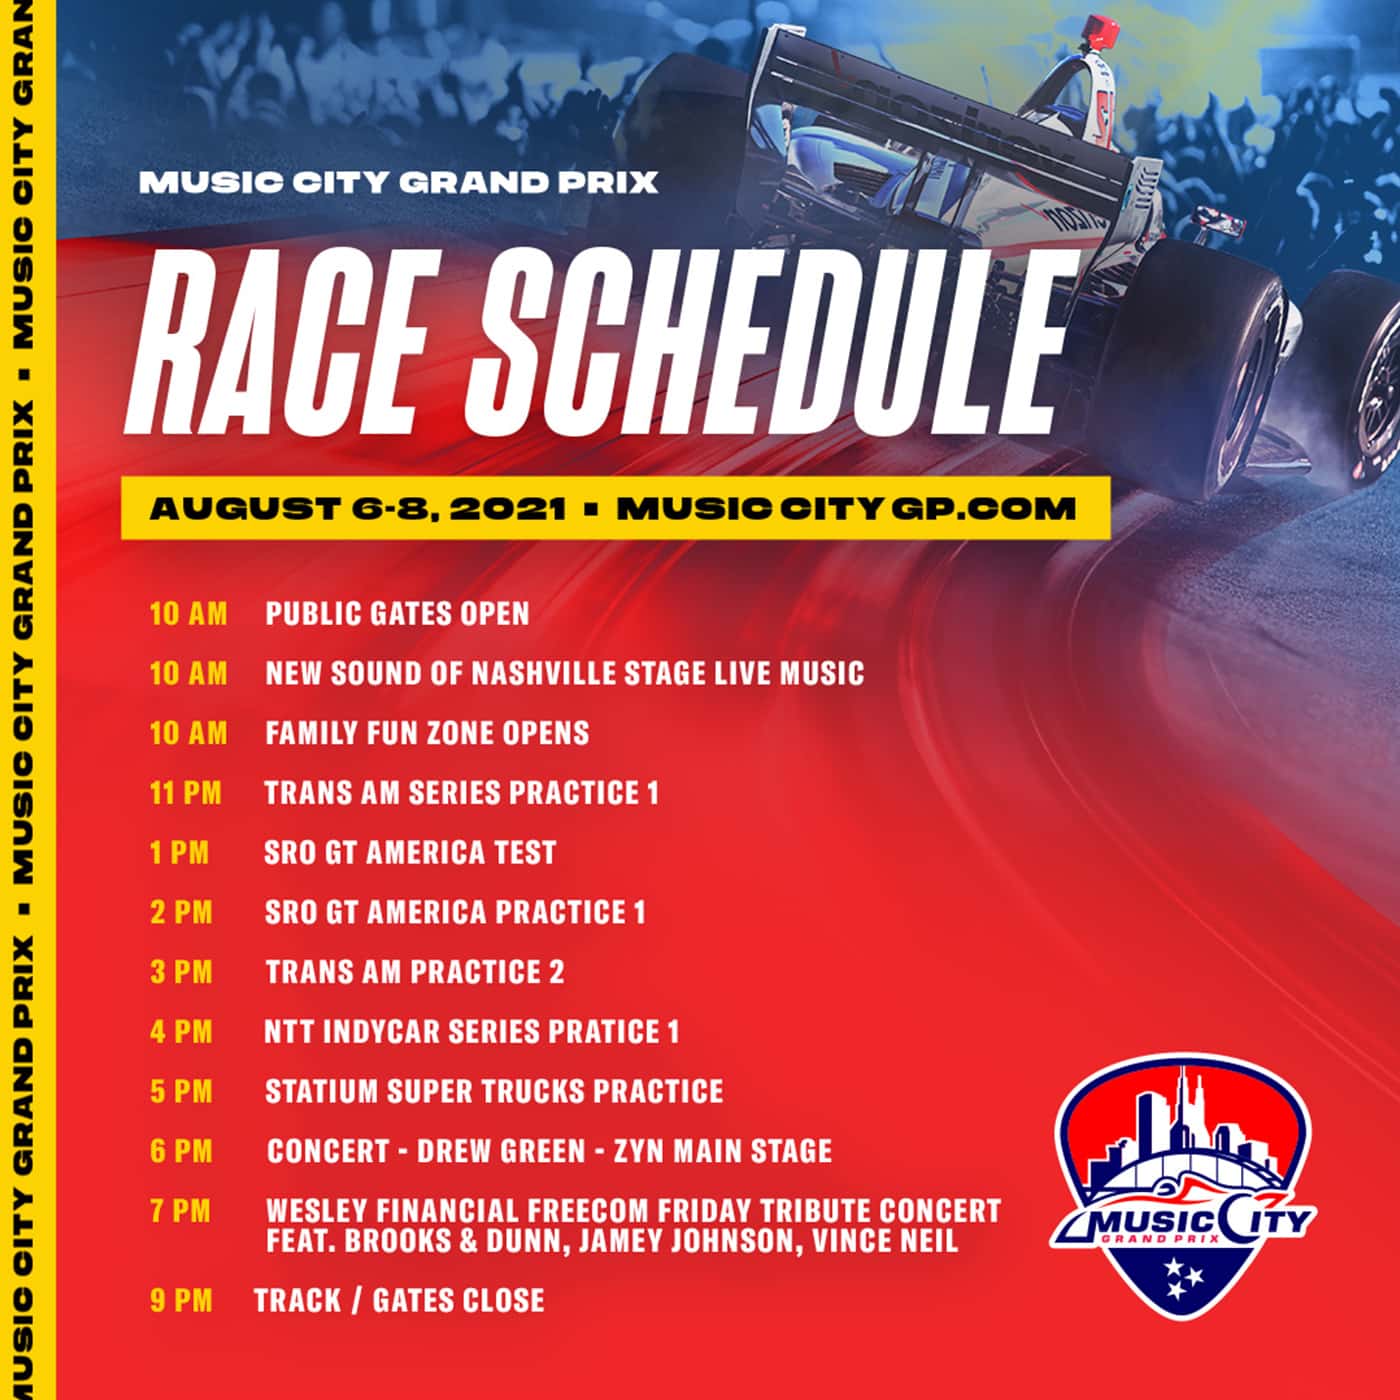 Music City Grand Prix race schedule